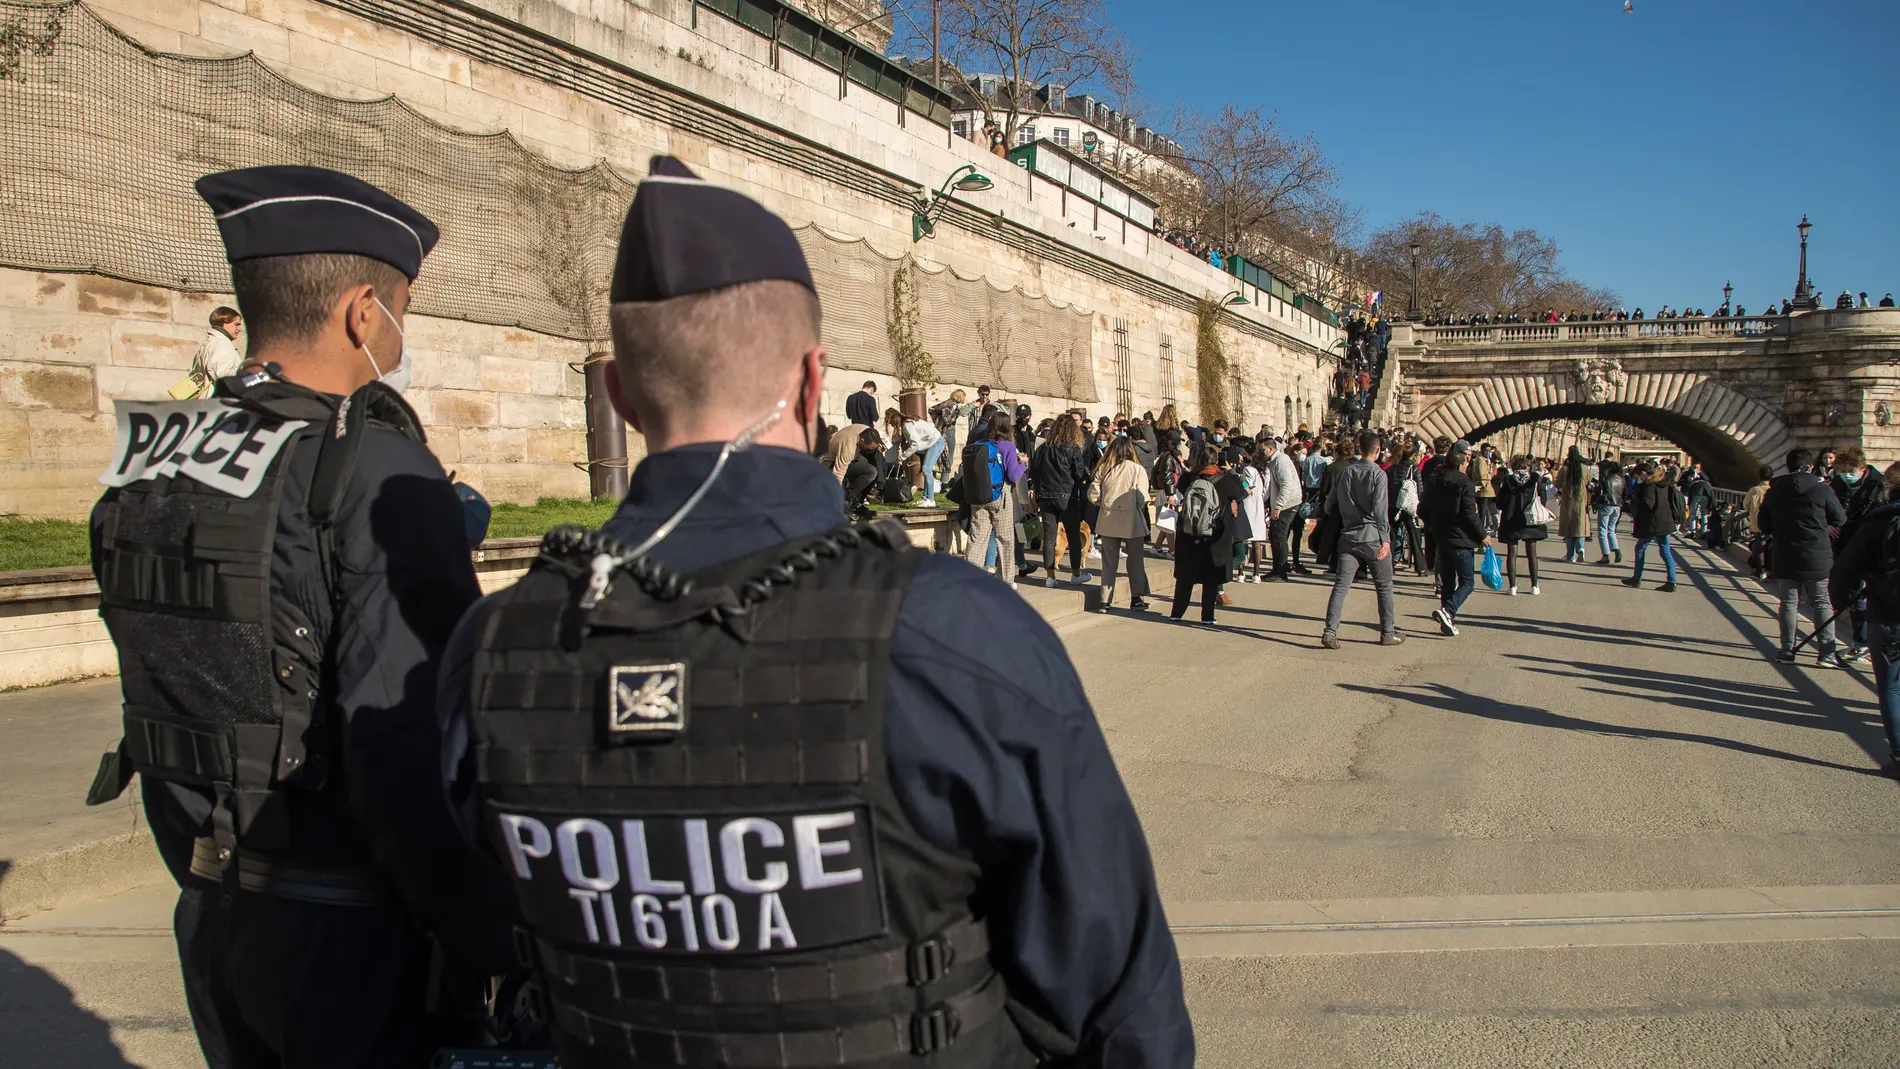 Policía francesa junto al Sena, este fin de semana en París